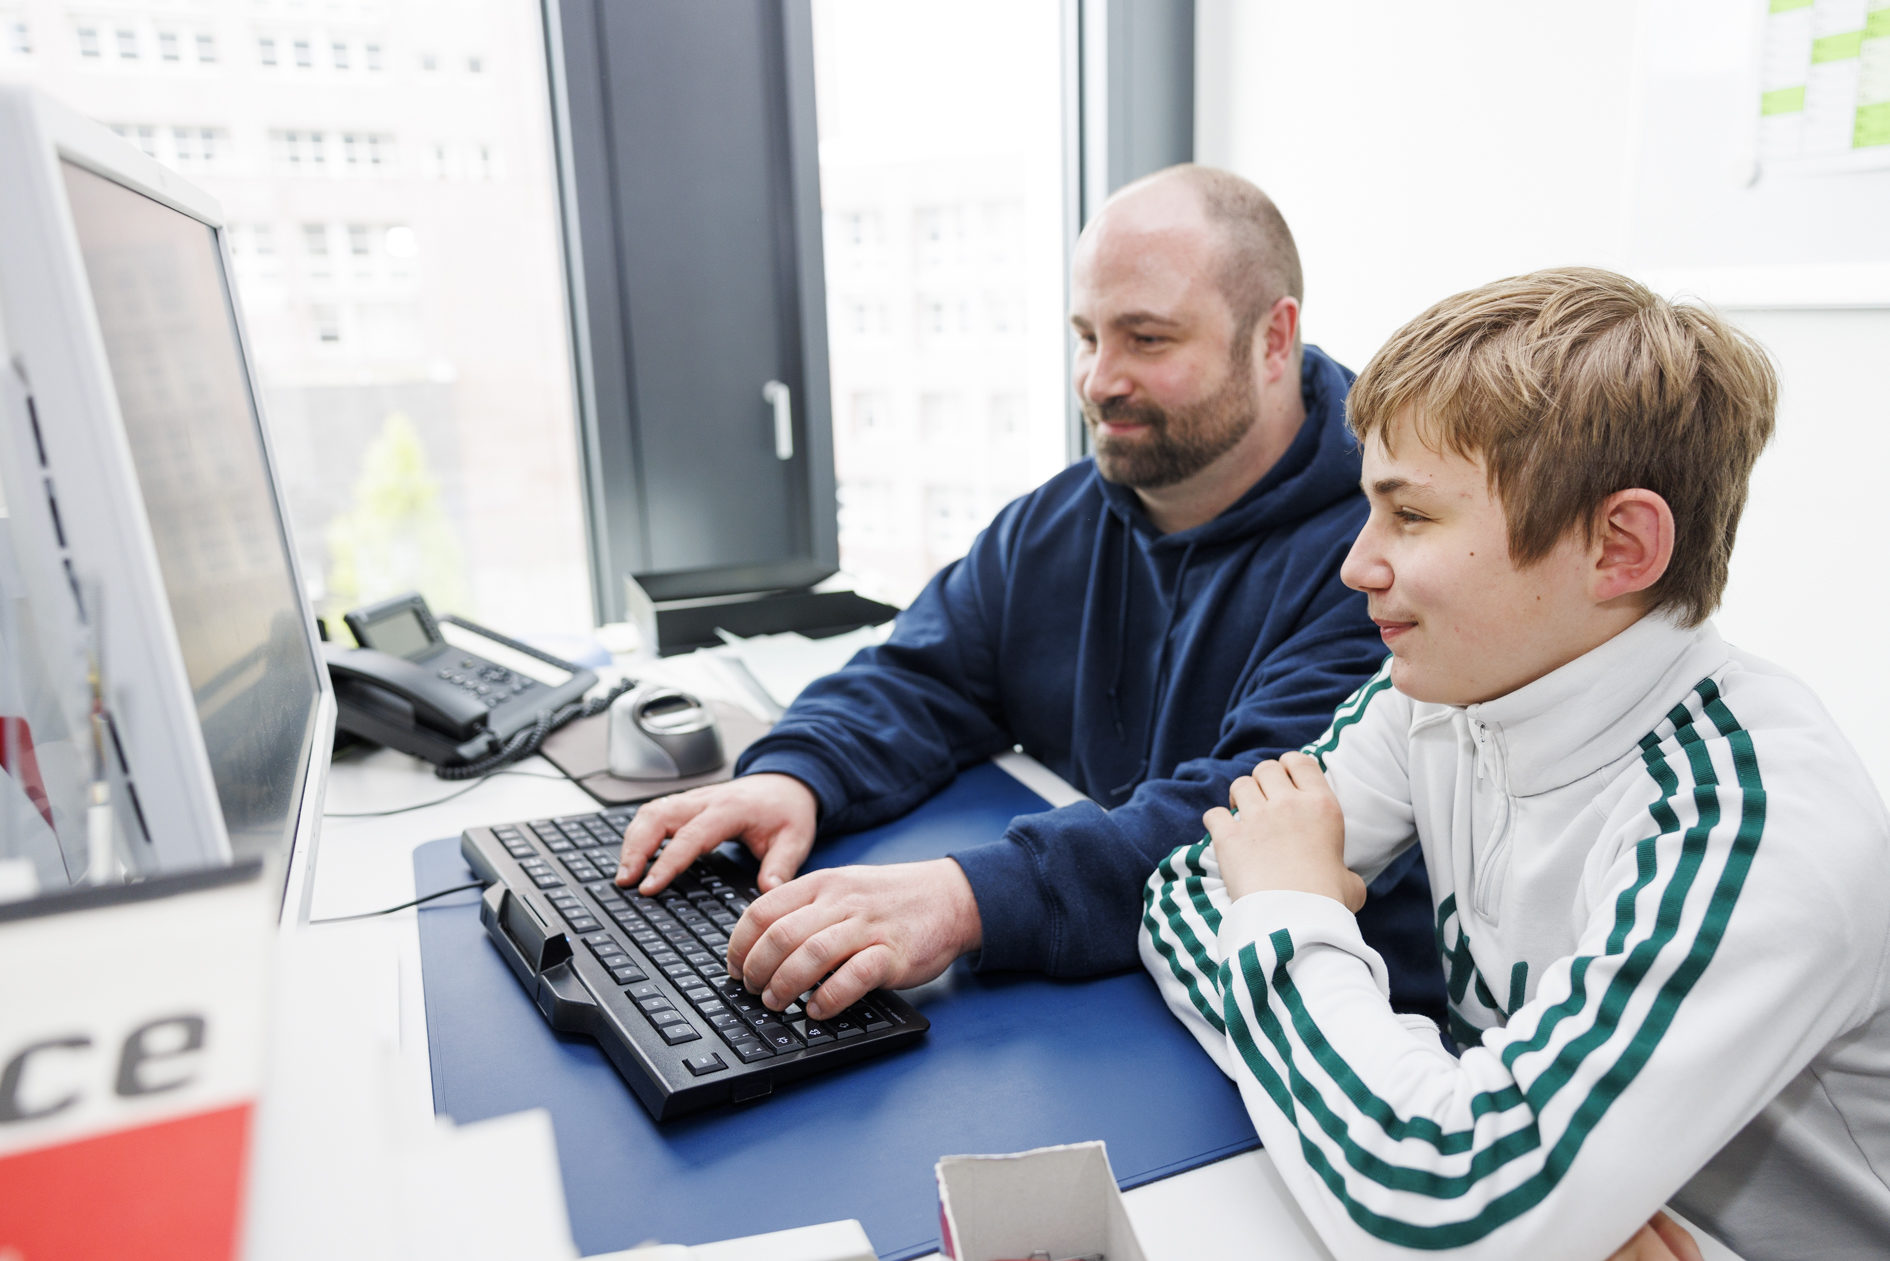 Zukunftstag bei der Stadt Braunschweig. Ein Mann mit einem Jungen am Computer. (Wird bei Klick vergrößert)